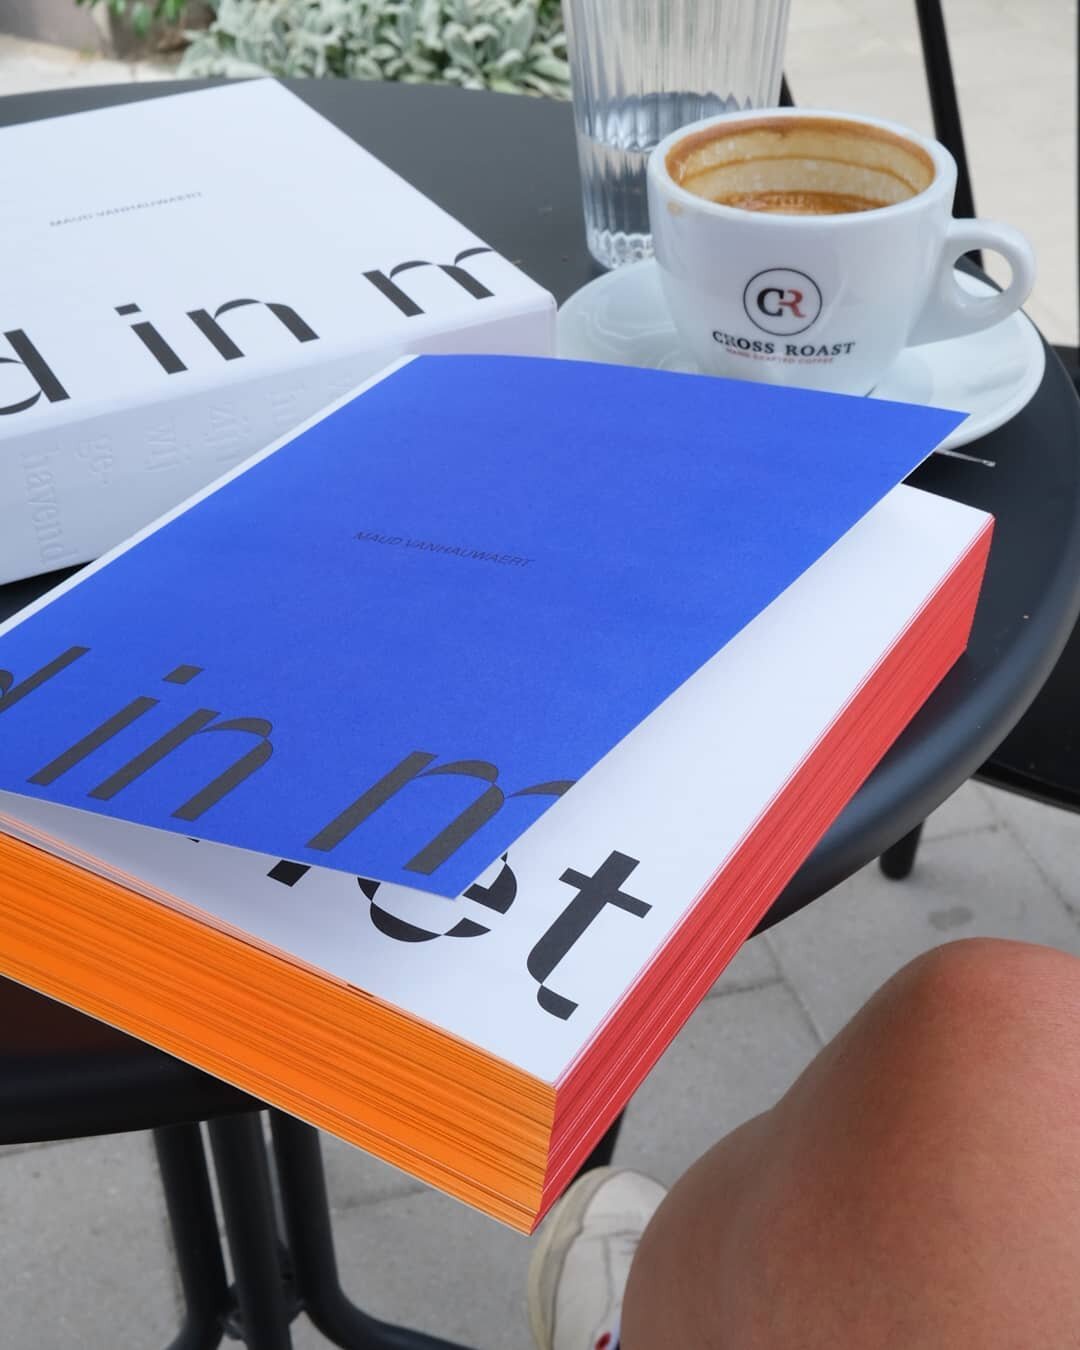 Koffie met Maud Vanhauwaert en haar FANTASTISCHE boek : meer verlang ik soms niet om 12u30 op een zomerdag
.
.
.
#maudvanhauwaert #stadsdichter #limitededition #poezie #foodphotography #foodforthesoul #artbook #antwerpennoord #brandbar #2060mijnbuurt